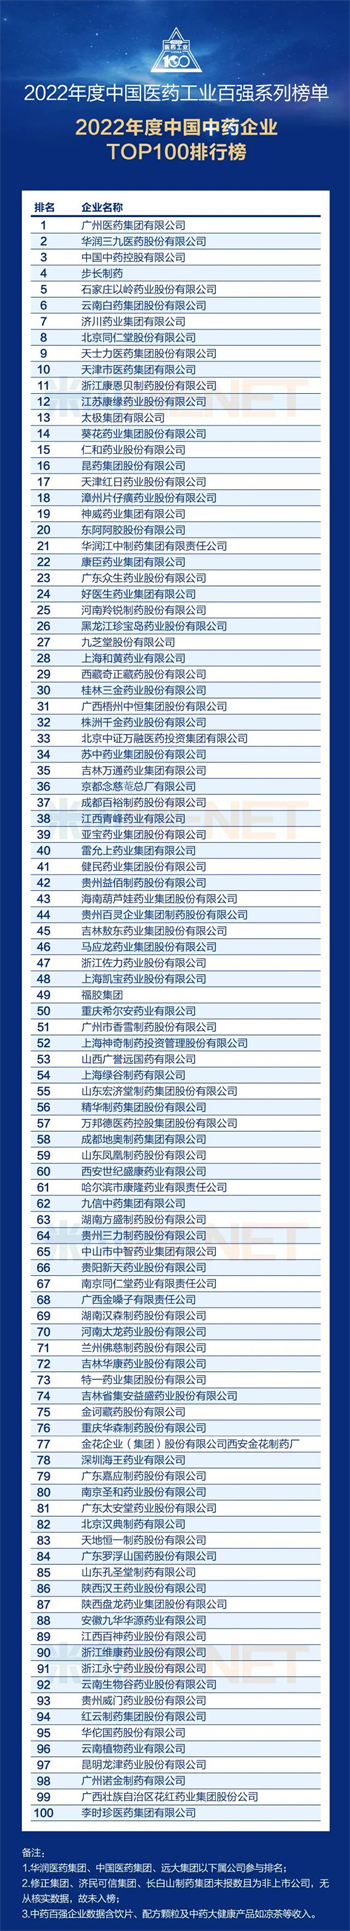 热烈祝贺九华华源药业第四次上榜“中国中药企业TOP100”